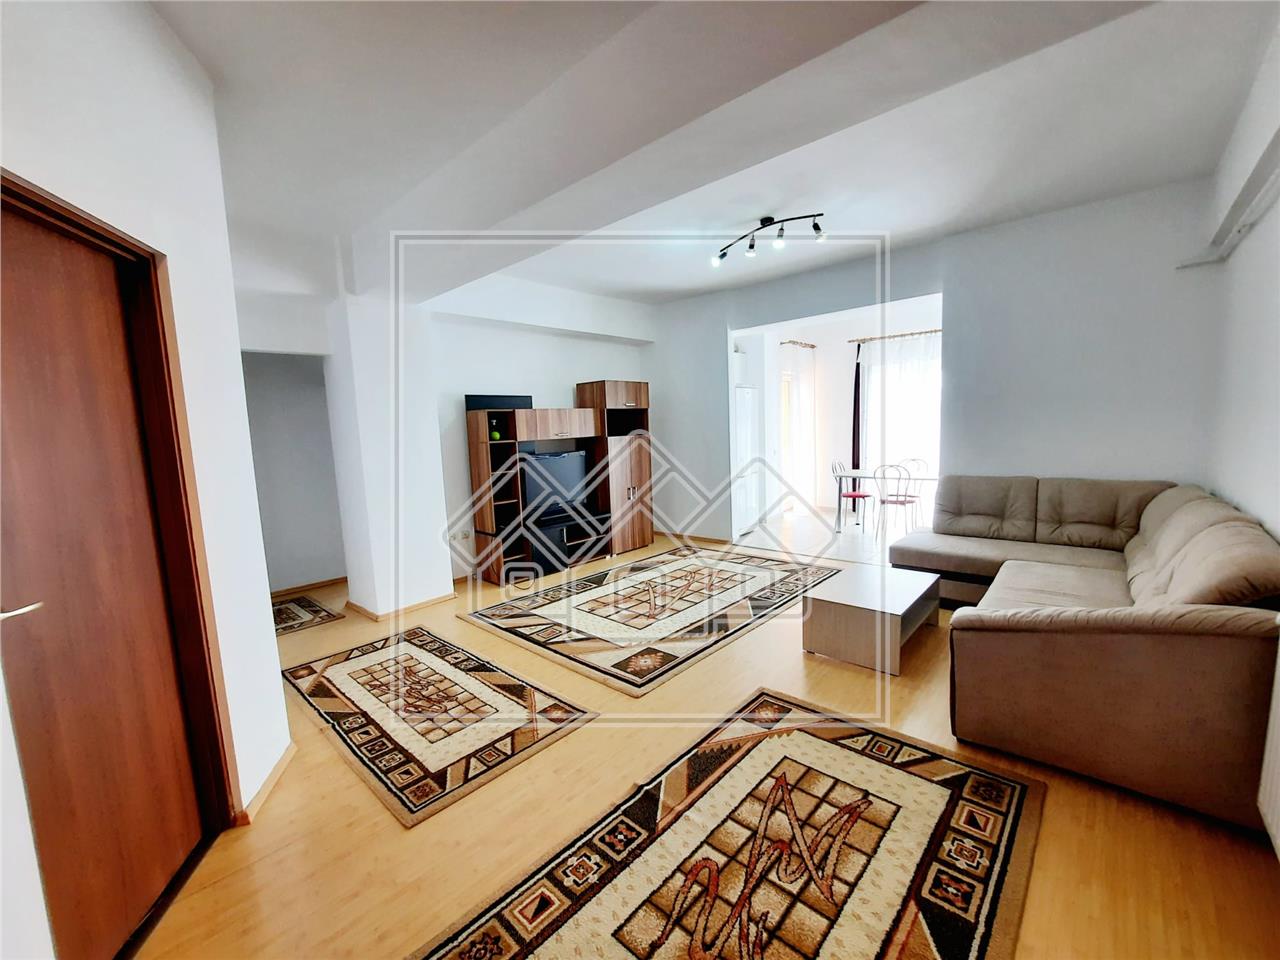 Wohnung zur Miete in Sibiu - 3 Zimmer und Balkon - Bereich Strand II